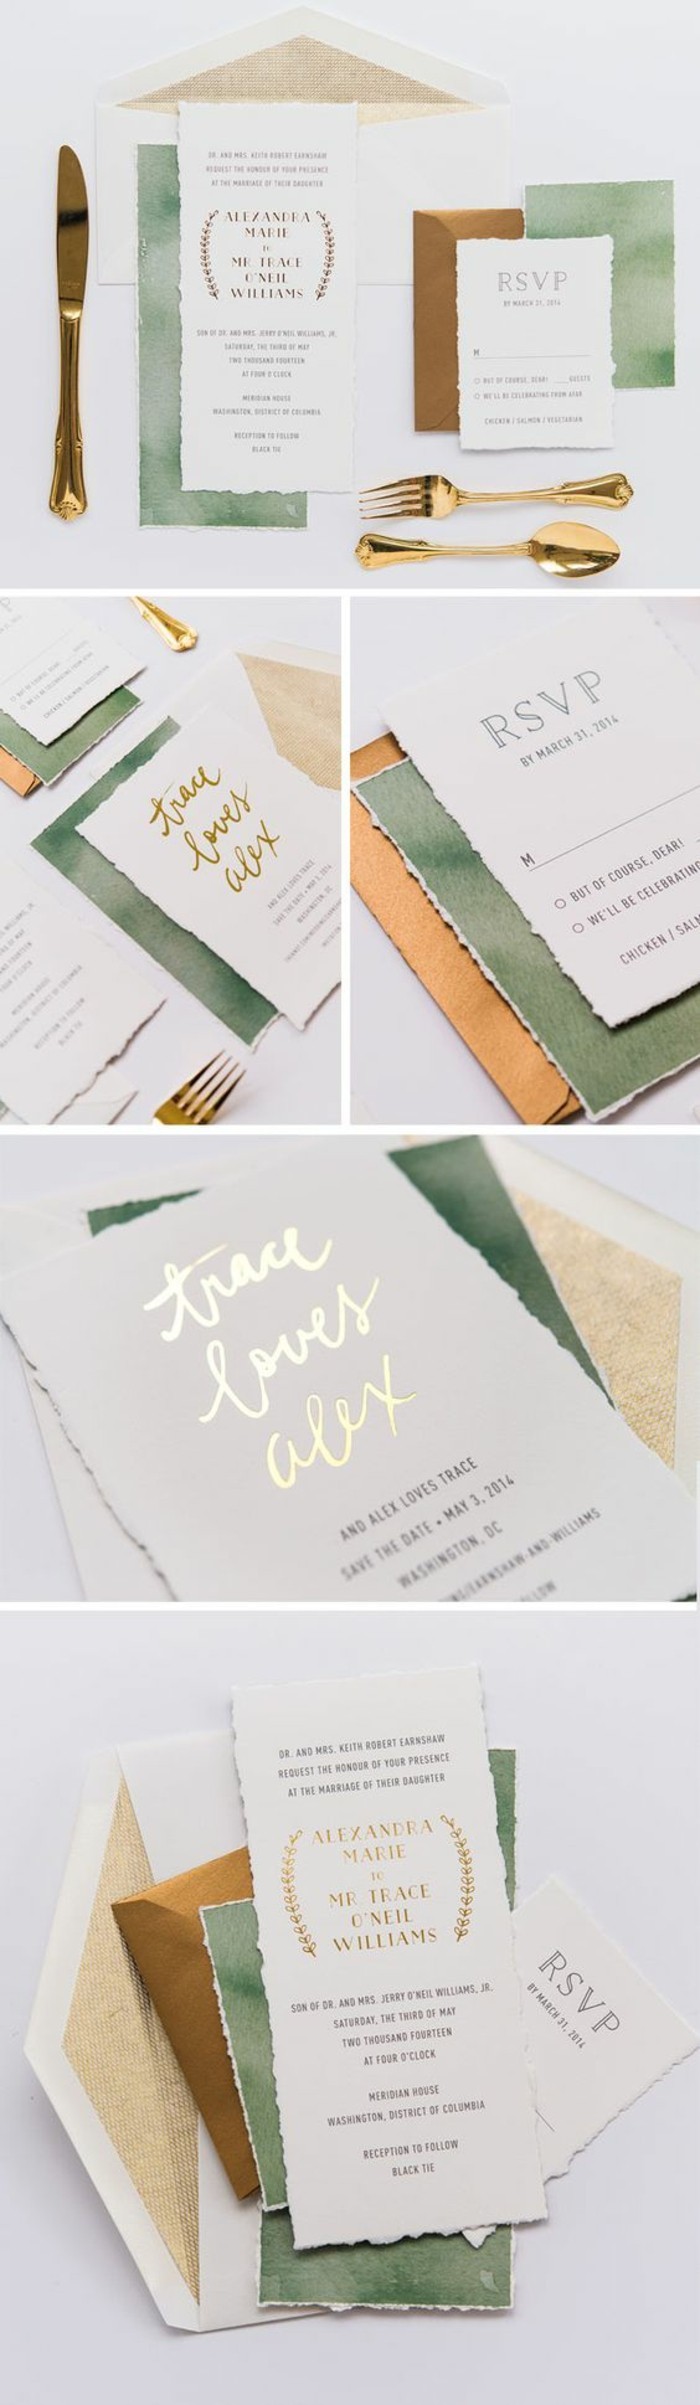 faire-part-de-mariage-original-en-beige-vert-et-or-papier-beige-vert-idee-diy-carte-invitation